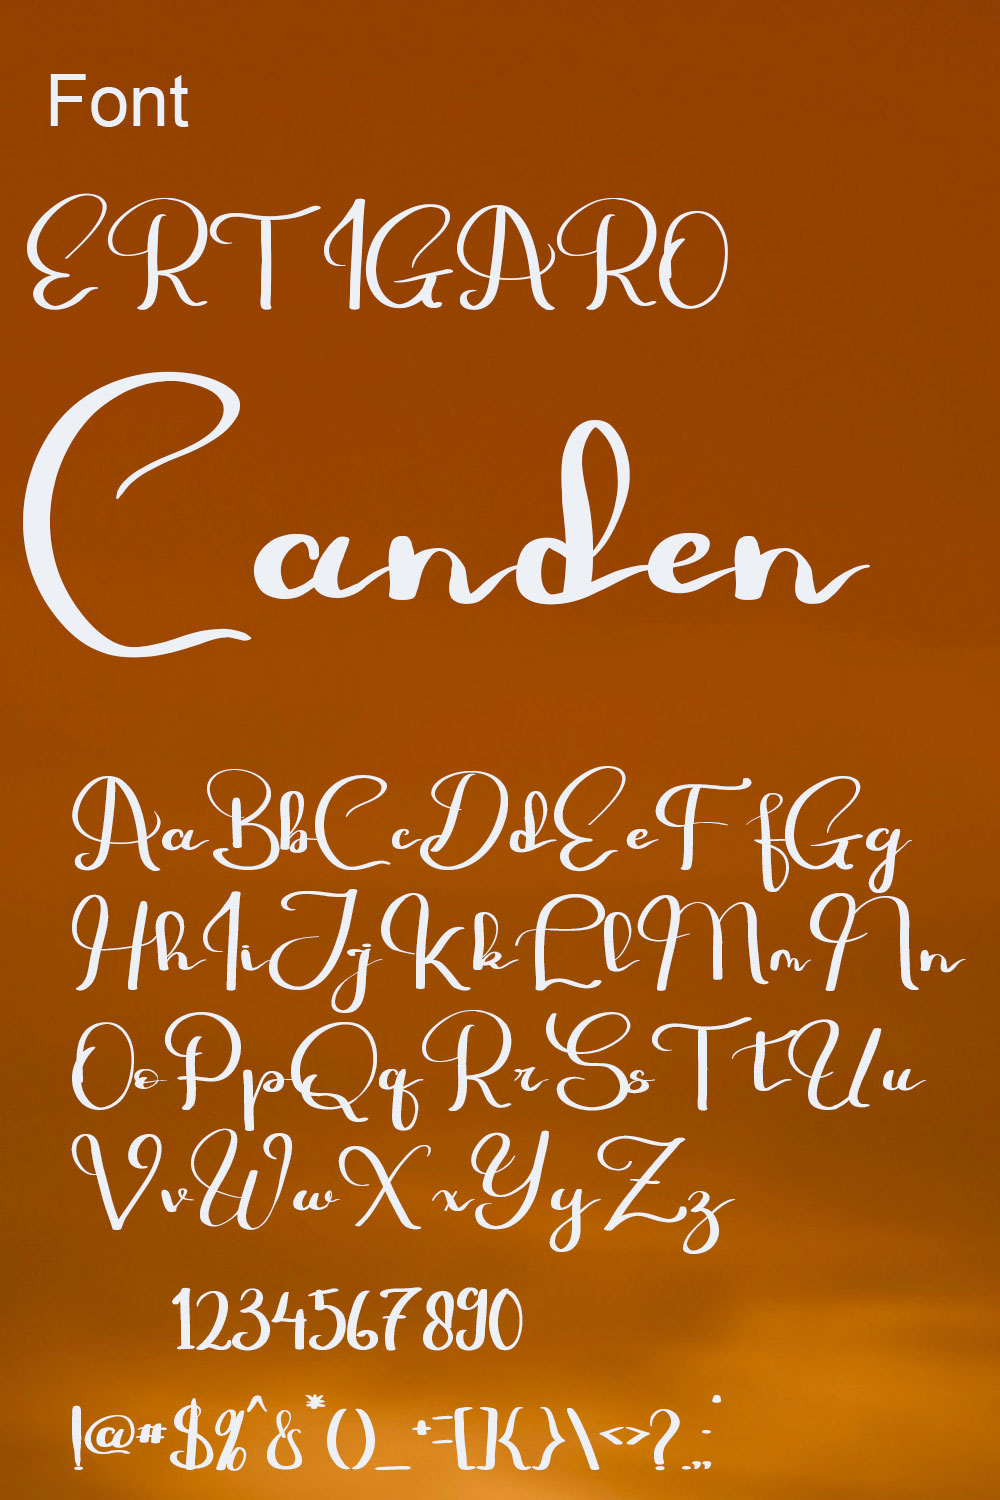 ERTIGARO Simple Handwritten Font - Only $18 pinterest image.